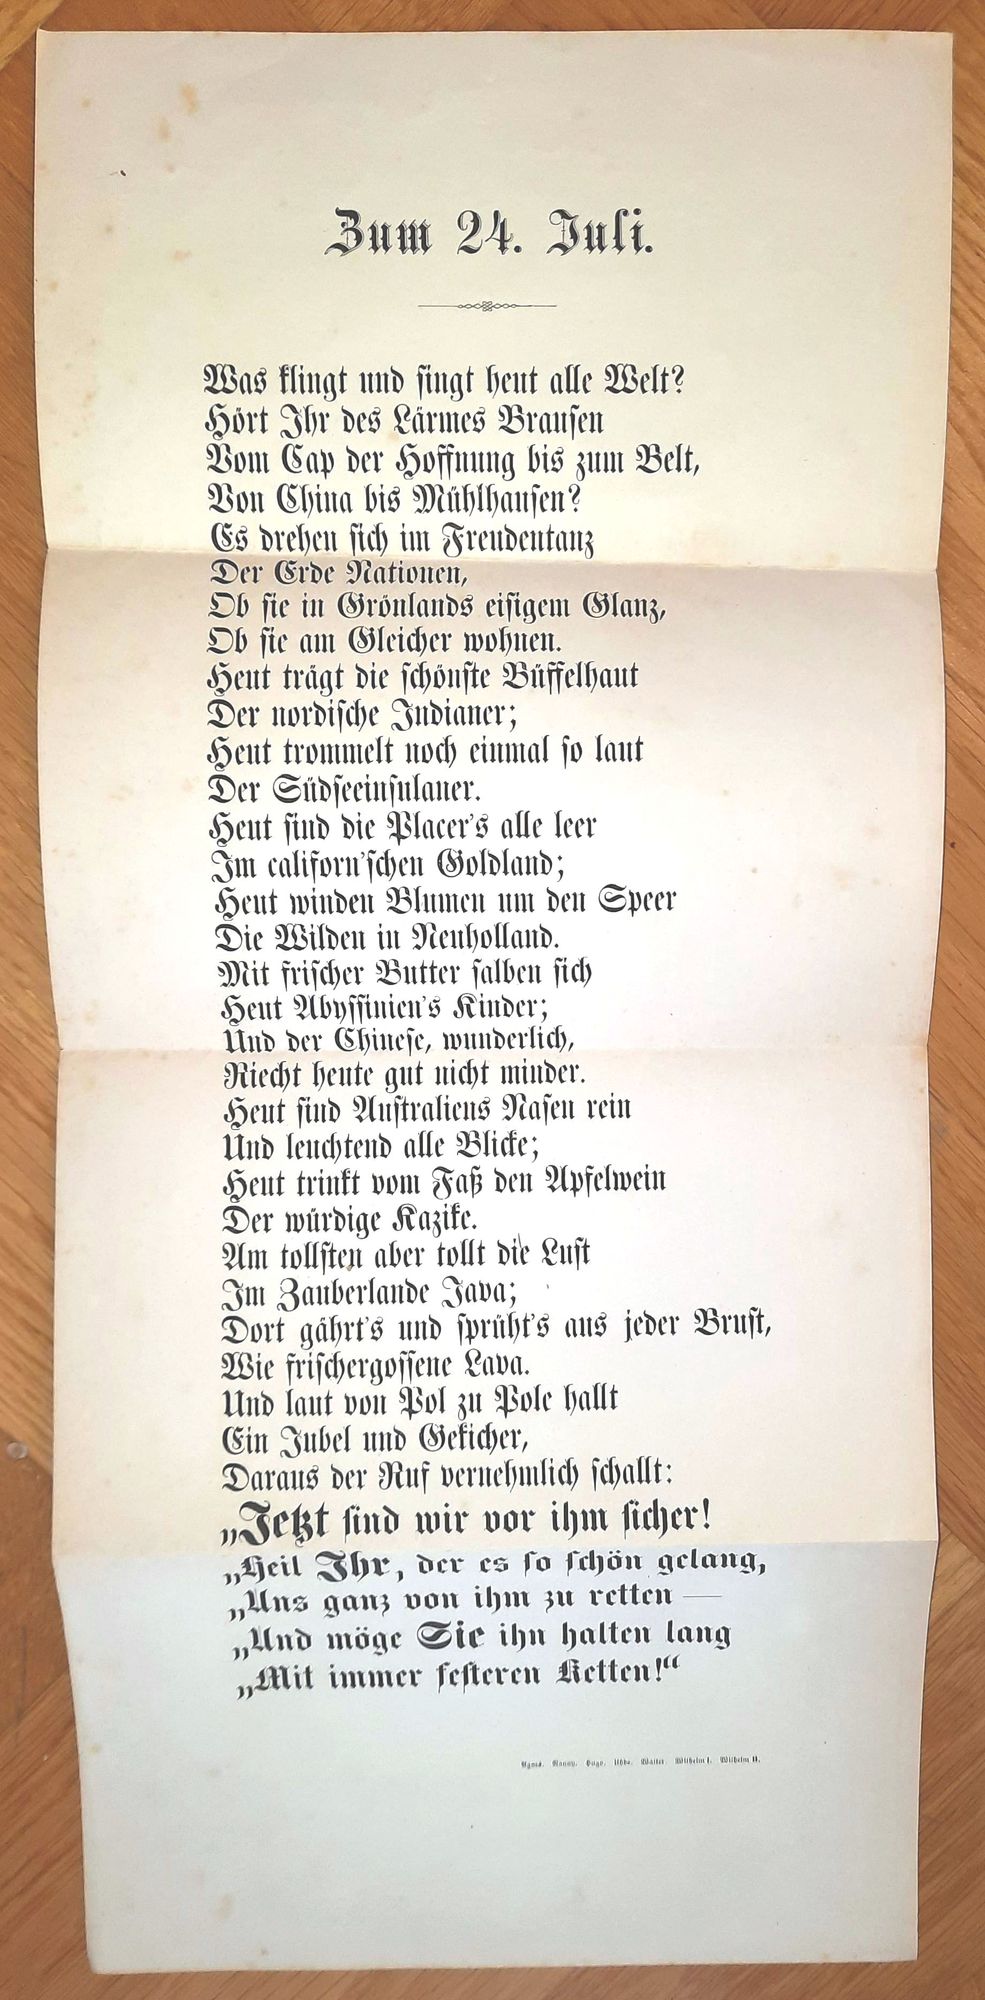  - Zum 24. Juli. - Hochzeitsgedicht auf die Vermhlung Friedrich Gerstckers mit Marie Luise Visscher (auch: Fischer) van Gaasbeek am 24. Juli 1863..